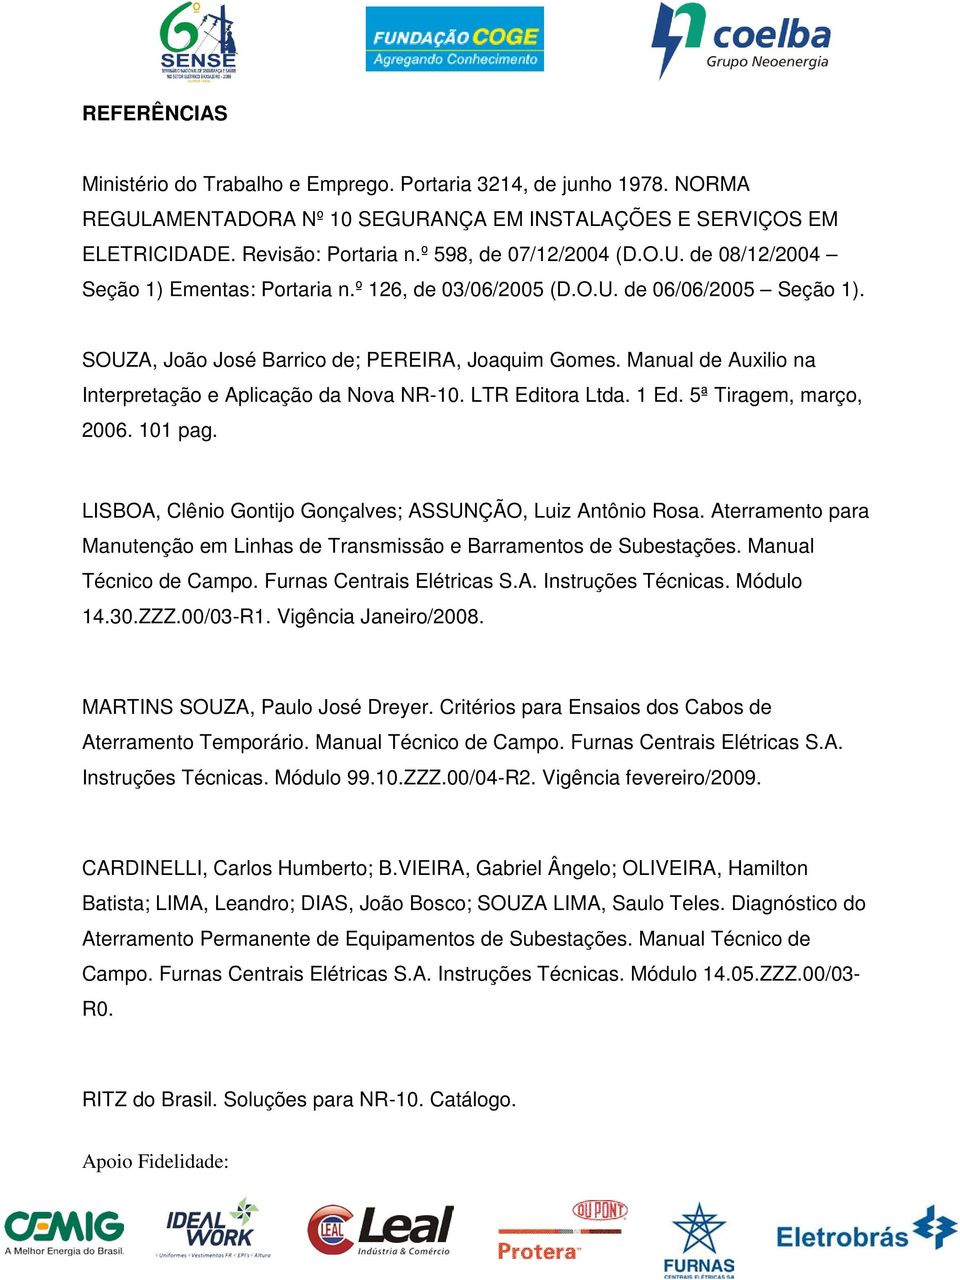 Manual de Auxilio na Interpretação e Aplicação da Nova NR-10. LTR Editora Ltda. 1 Ed. 5ª Tiragem, março, 2006. 101 pag. LISBOA, Clênio Gontijo Gonçalves; ASSUNÇÃO, Luiz Antônio Rosa.